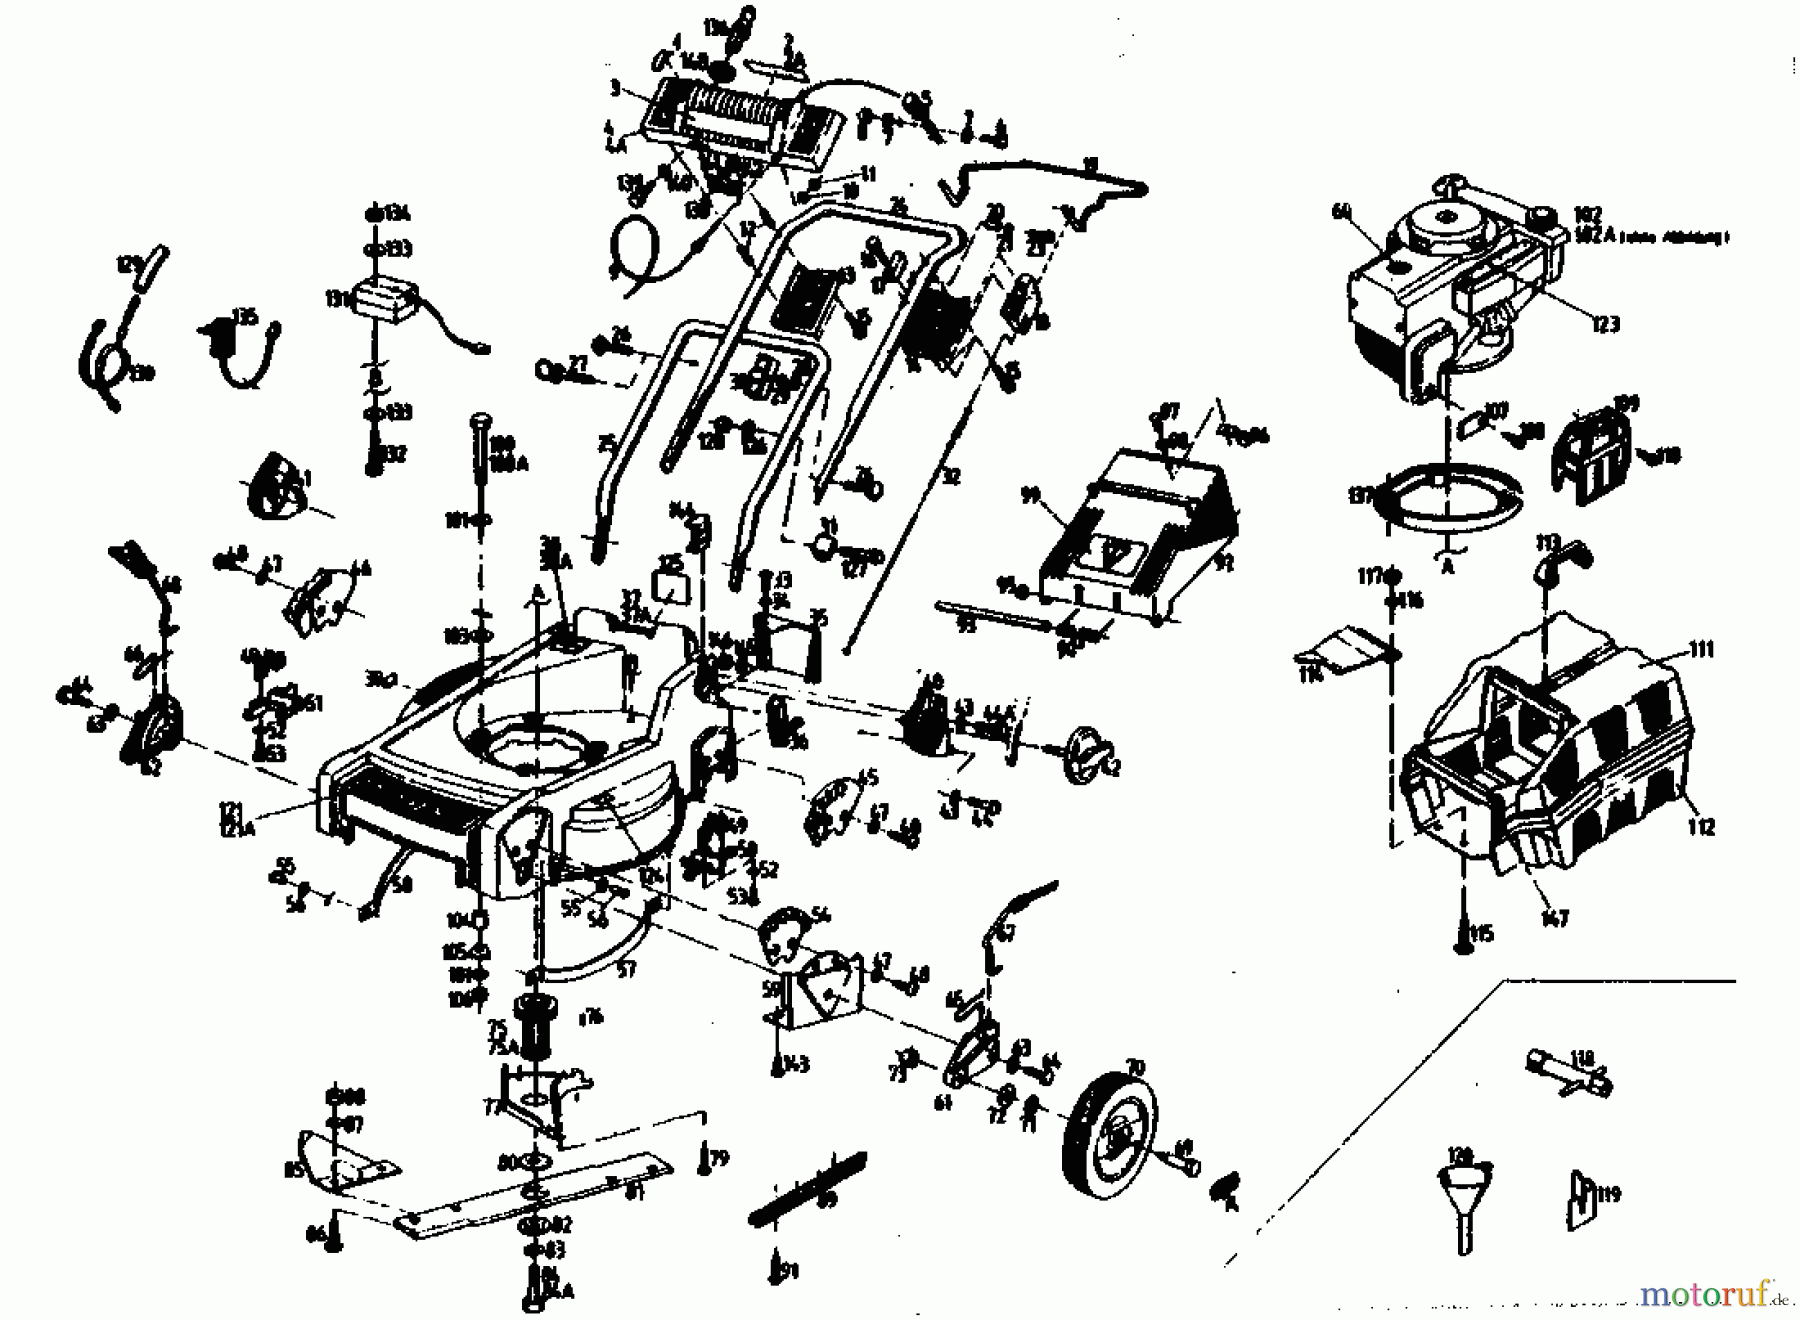  Gutbrod Motormäher mit Antrieb HB 47 R 02847.08  (1989) Grundgerät